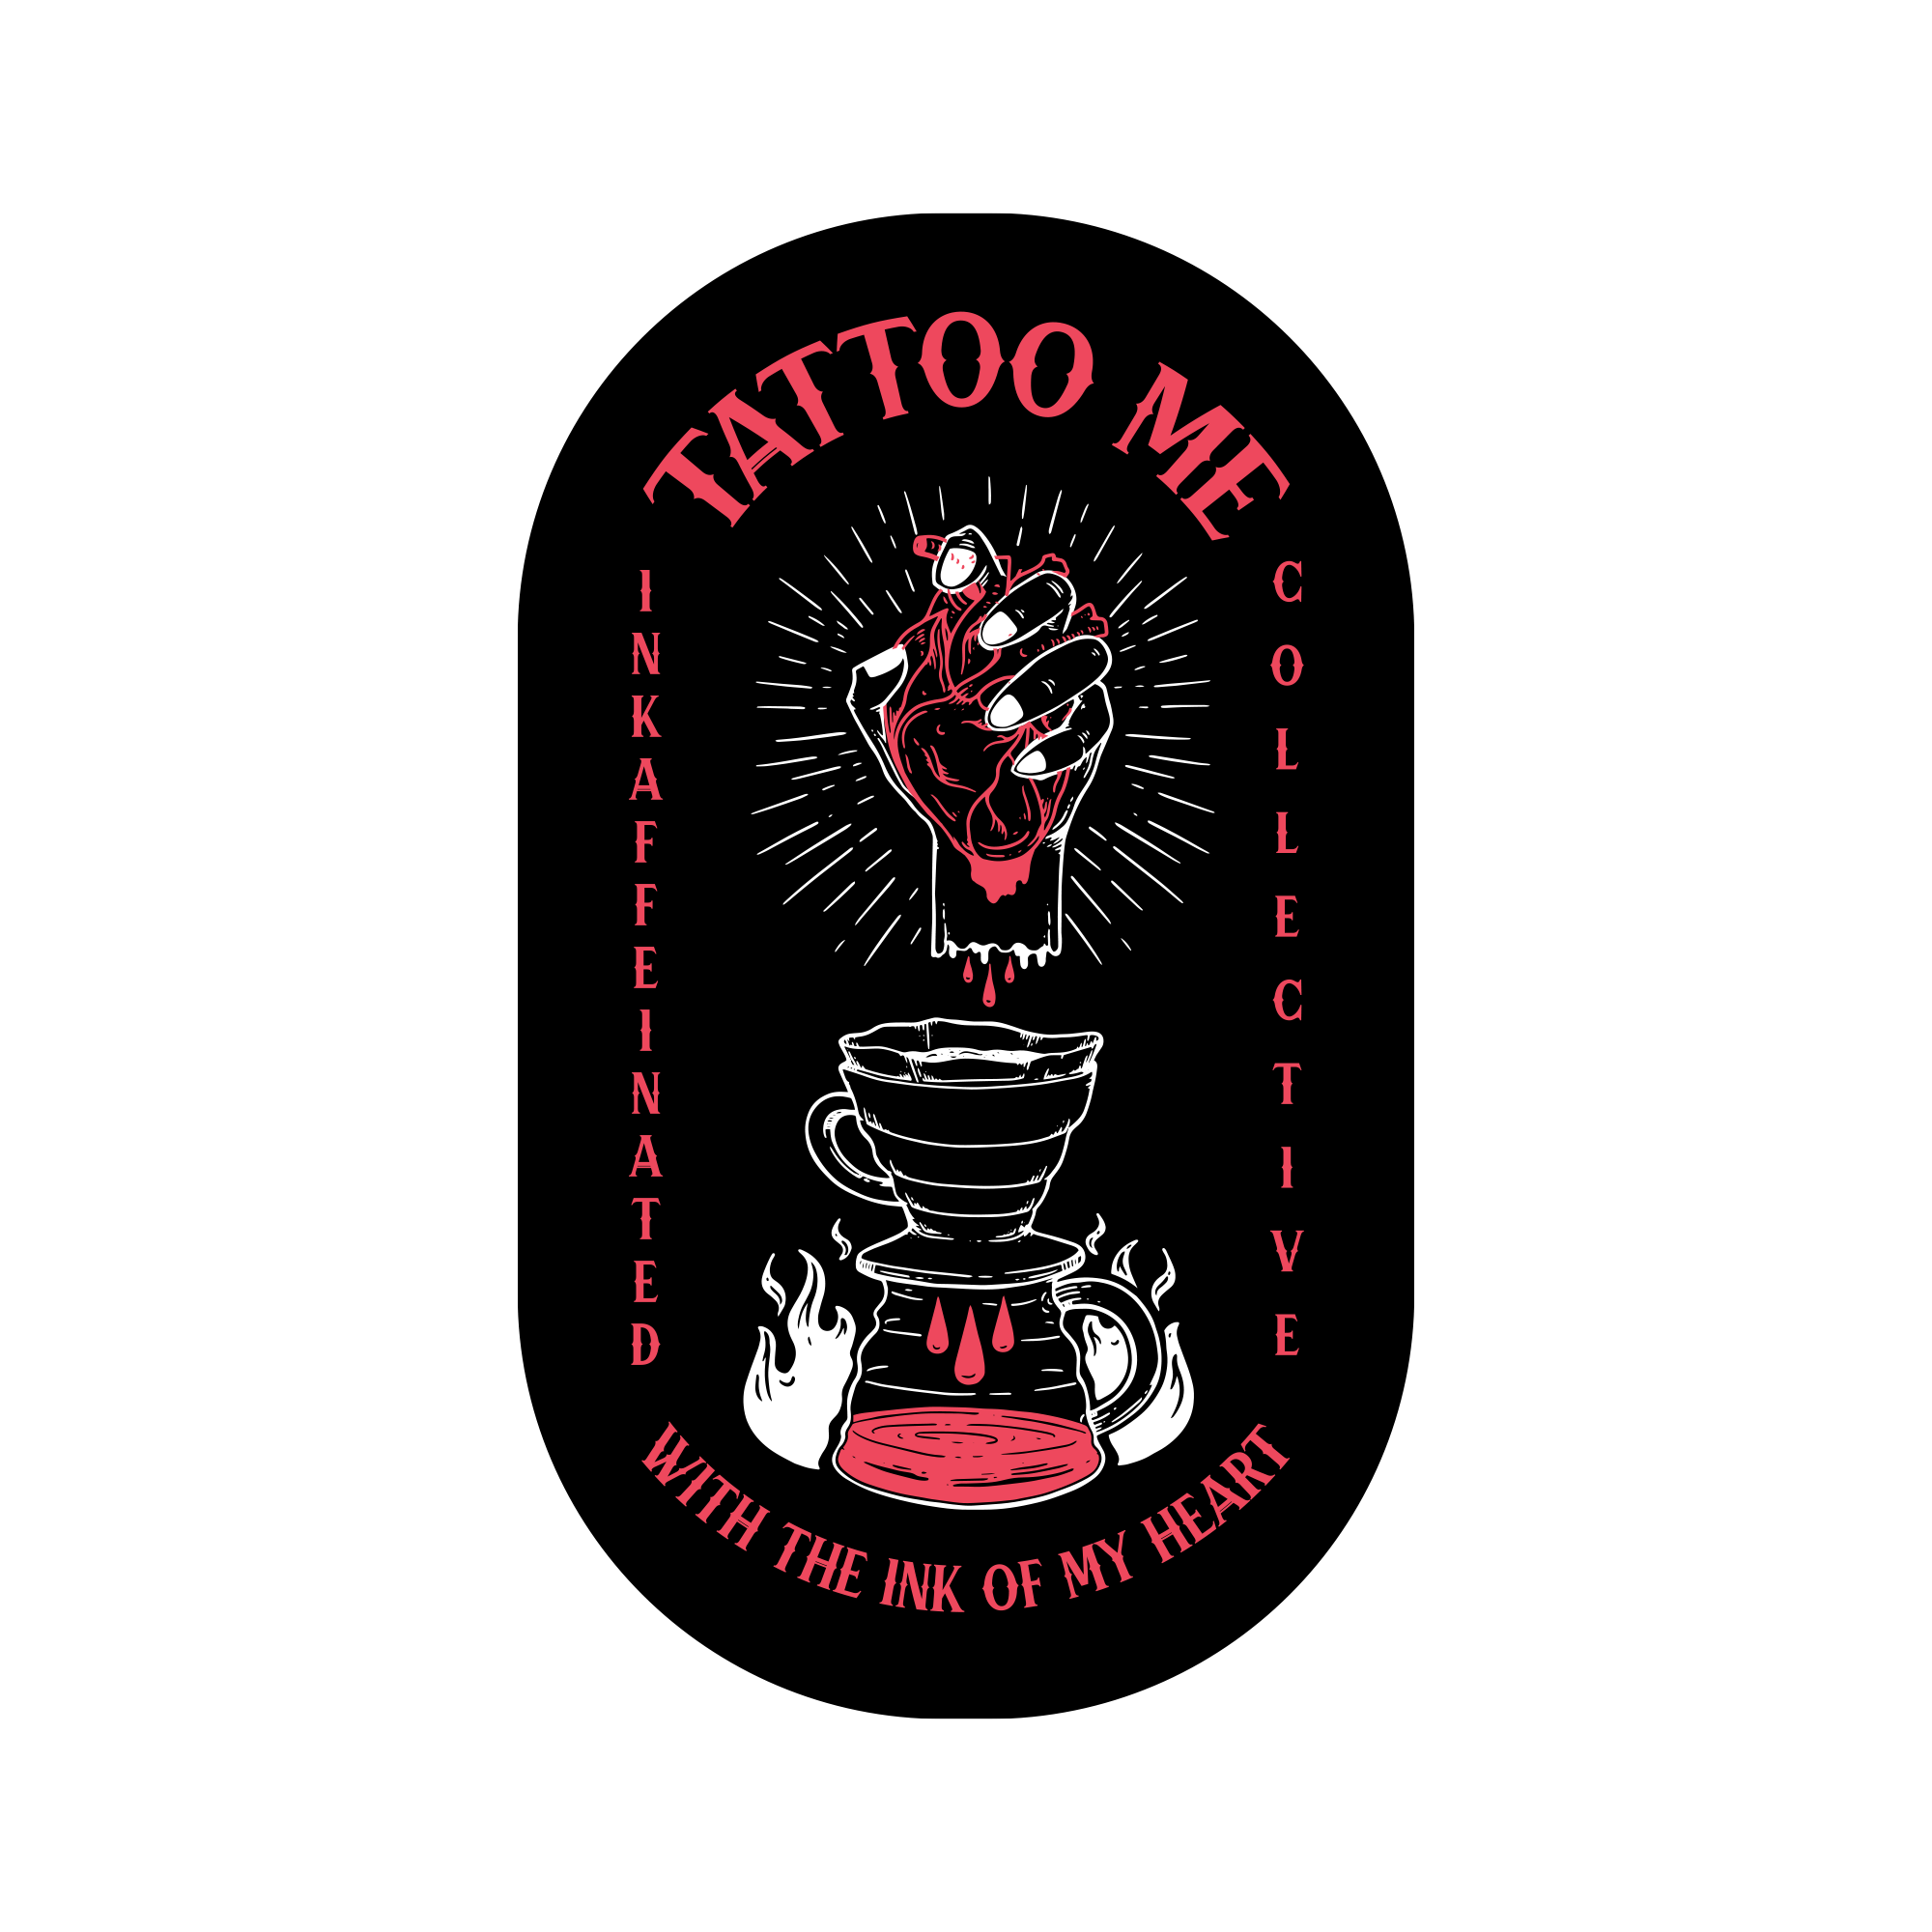 3 " Tattoo Me Sticker